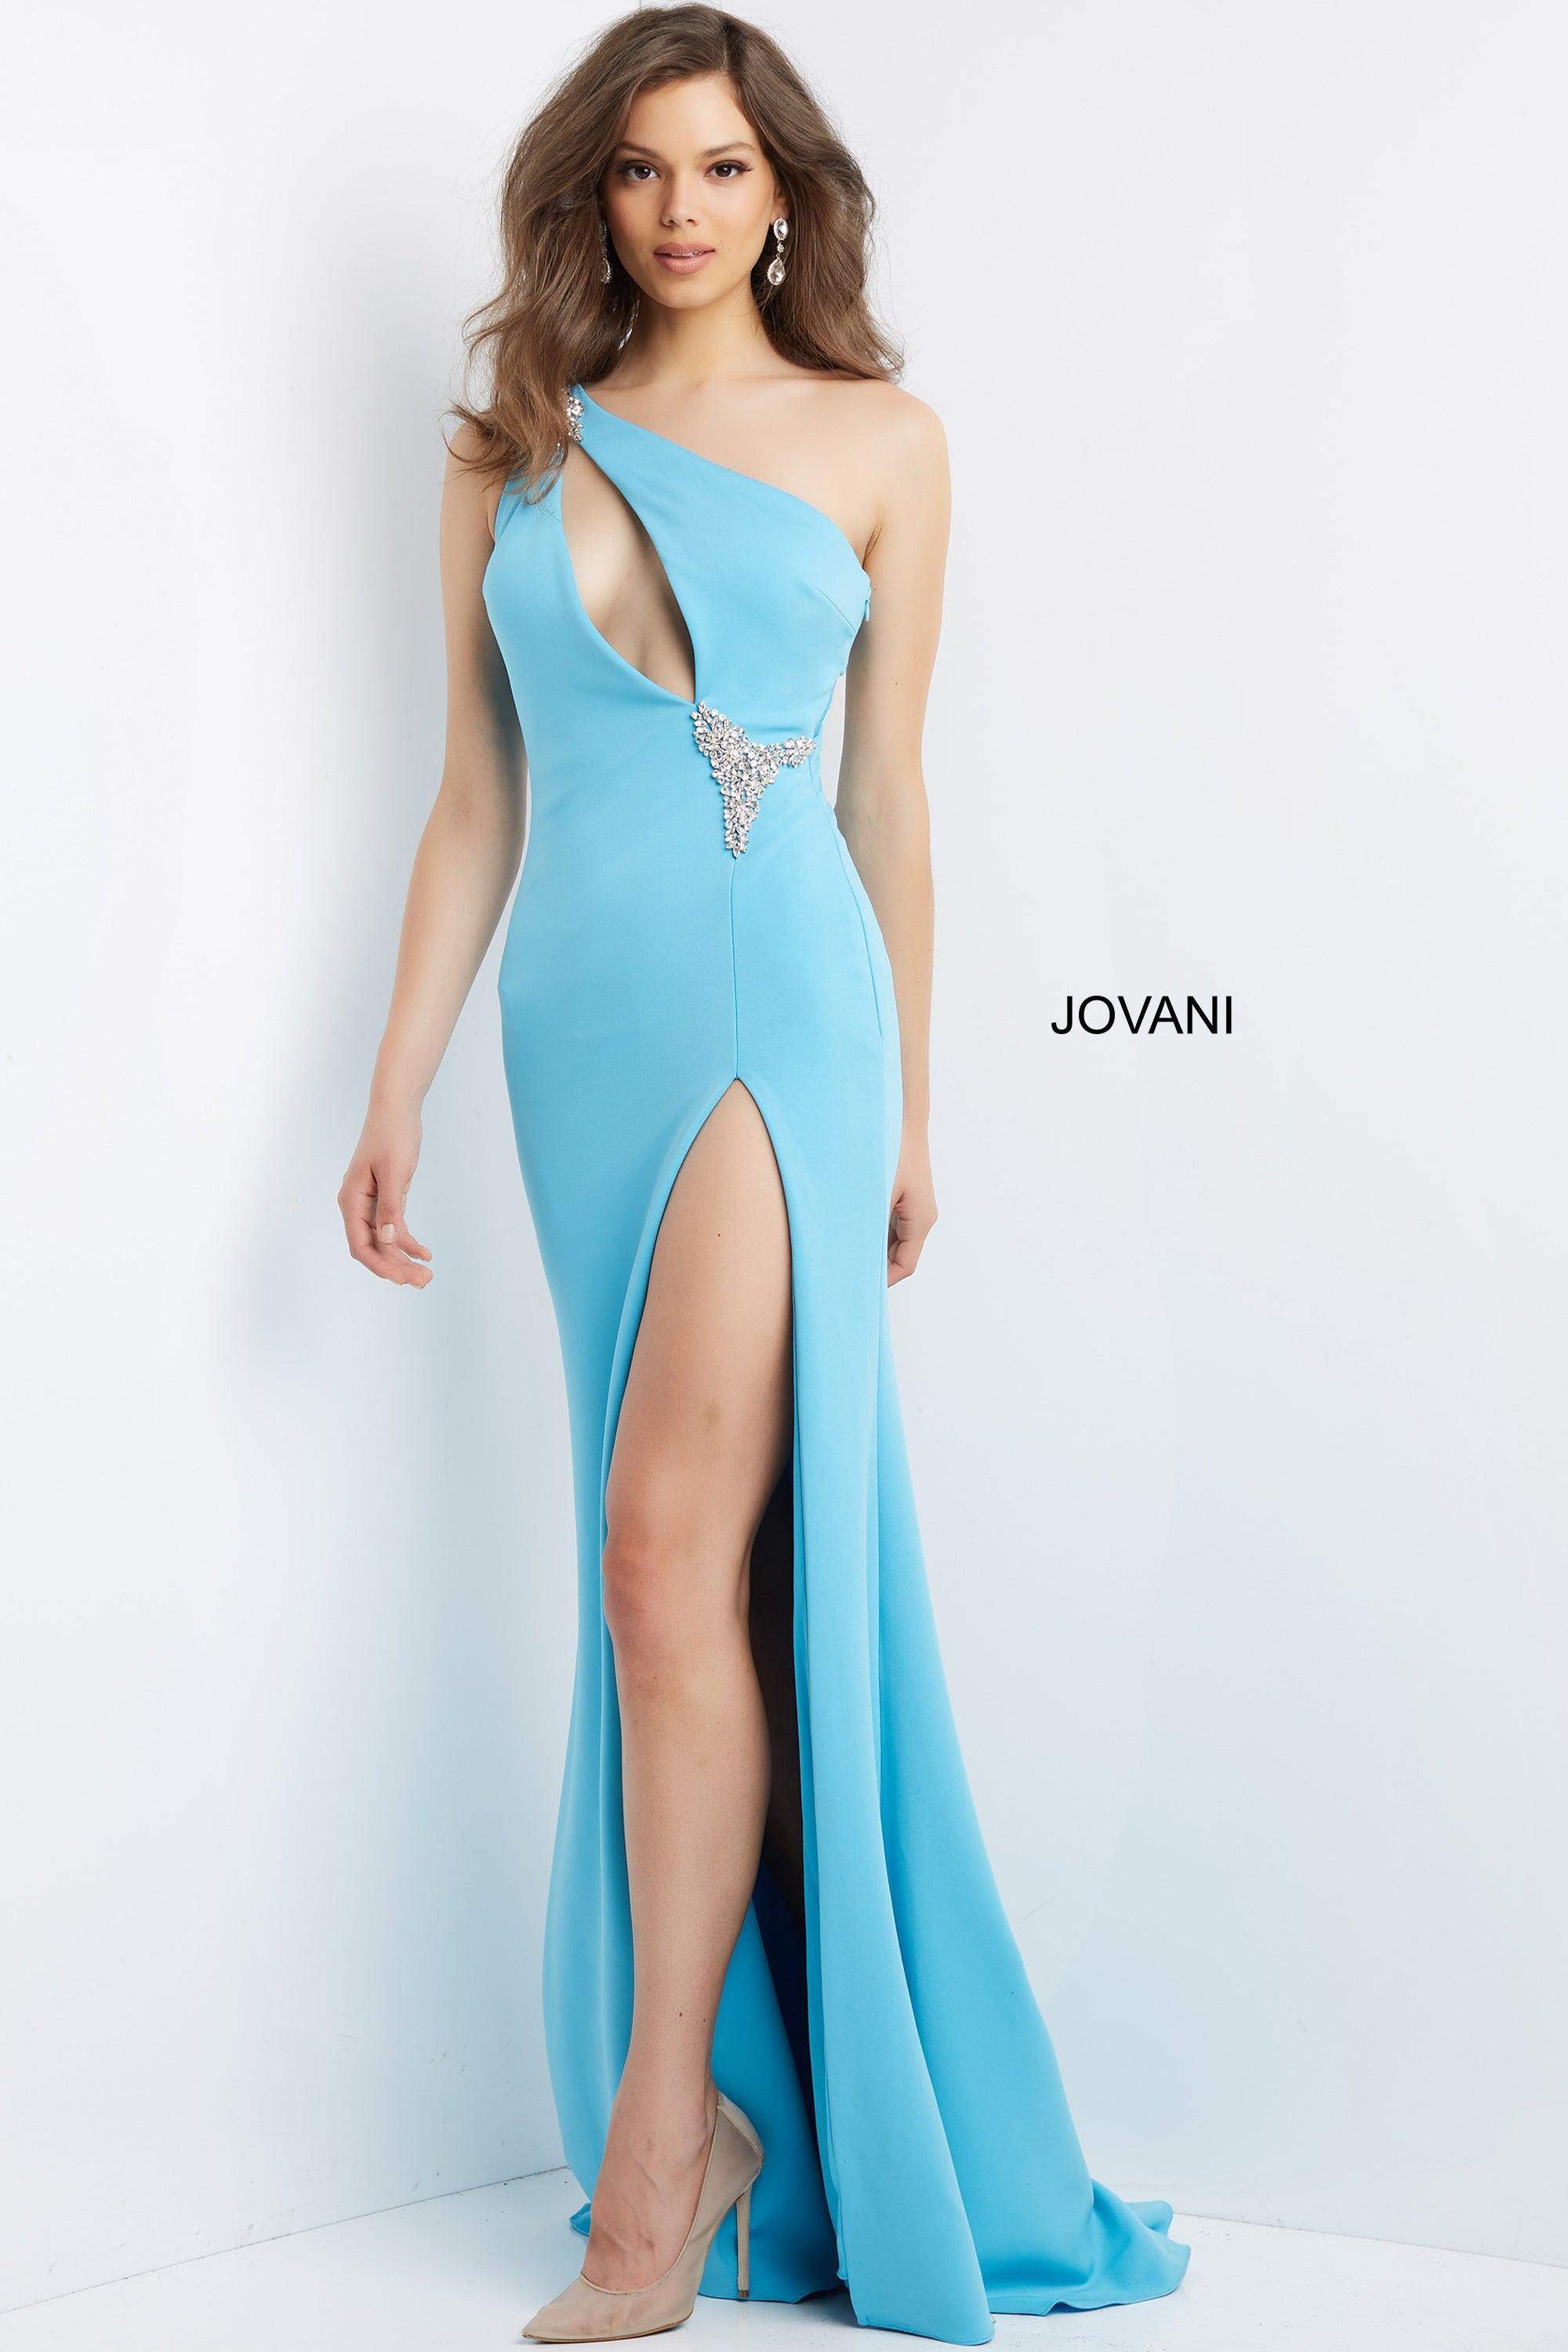 Jovani One Shoulder Long Formal Prom Dress 07173 - The Dress Outlet